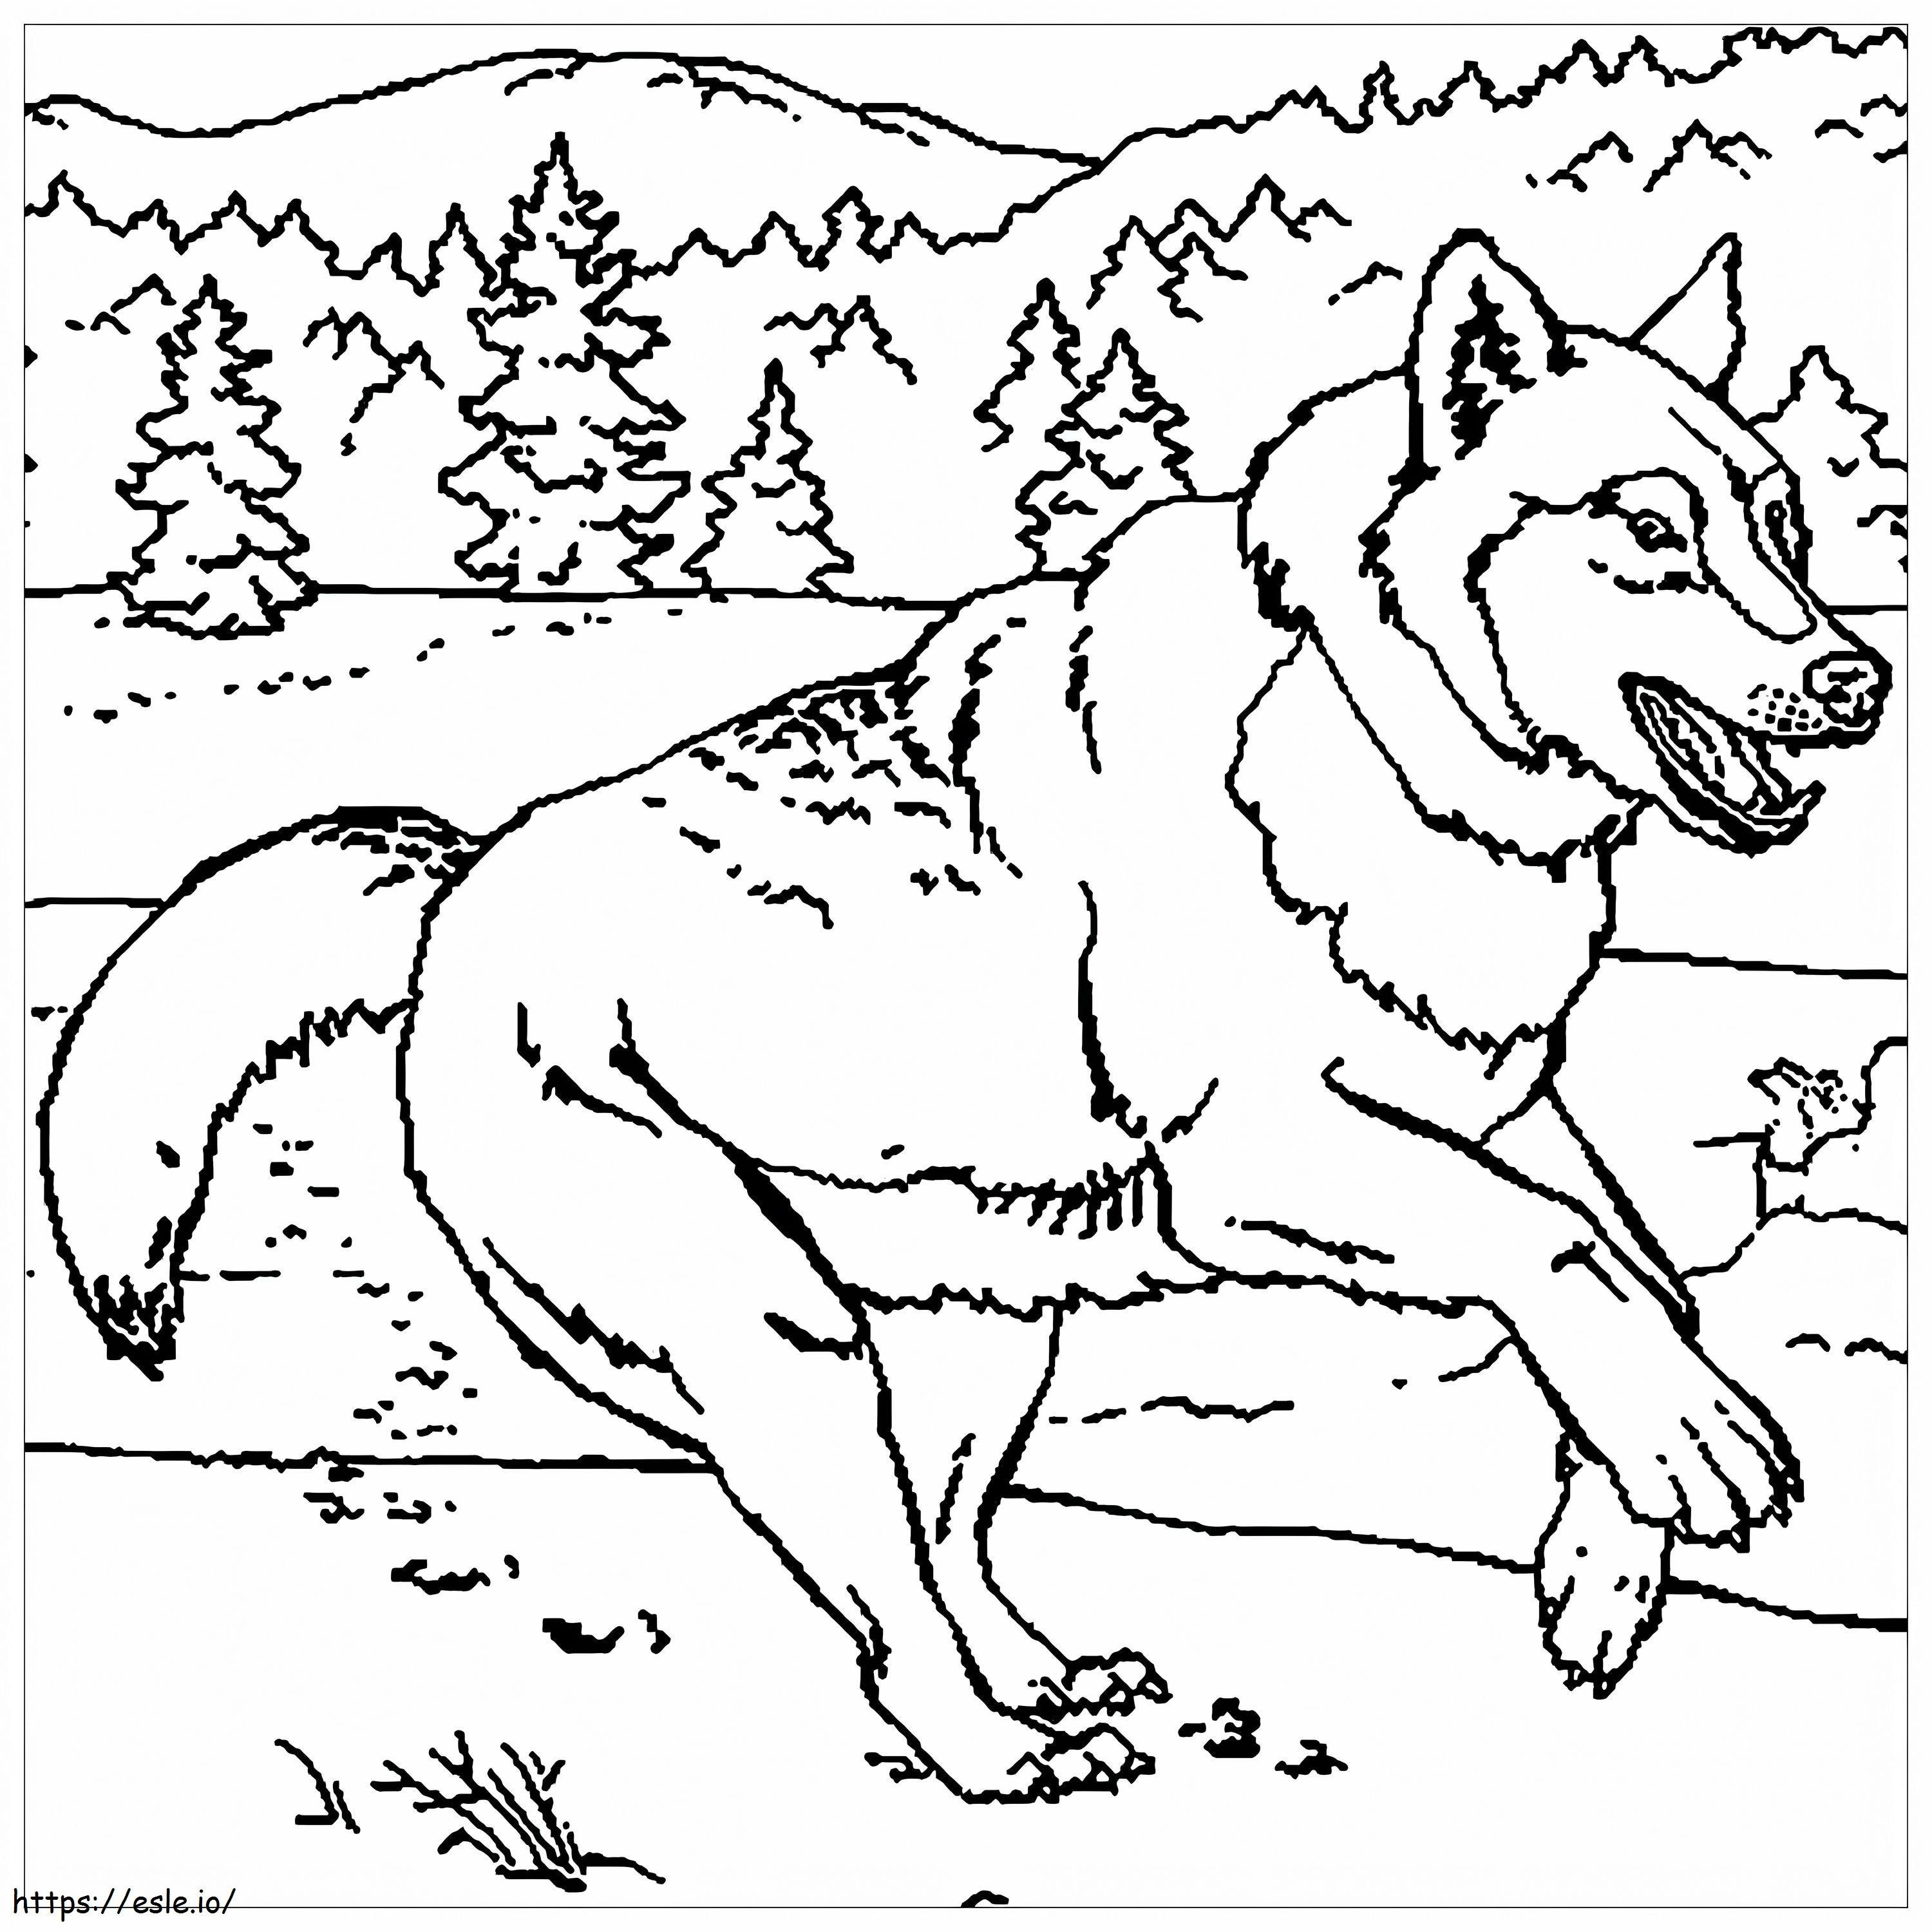 Disegno del lupo da colorare